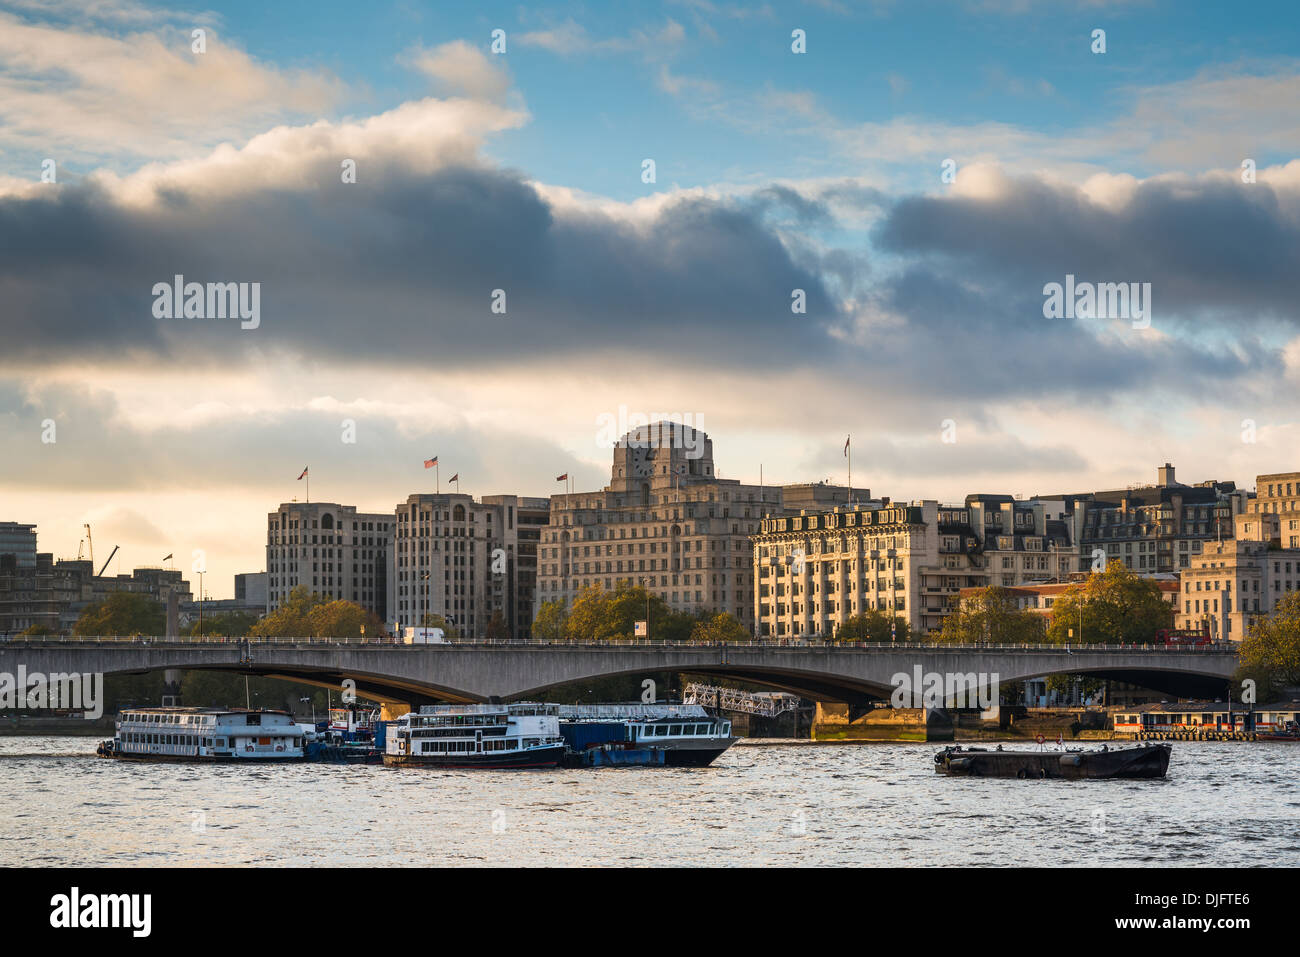 Thames Vergnügen Kreuzfahrten fahren Sie unter Waterloo Brücke; Shell - Mex Haus Gebäude bildet die Kulisse Stockfoto